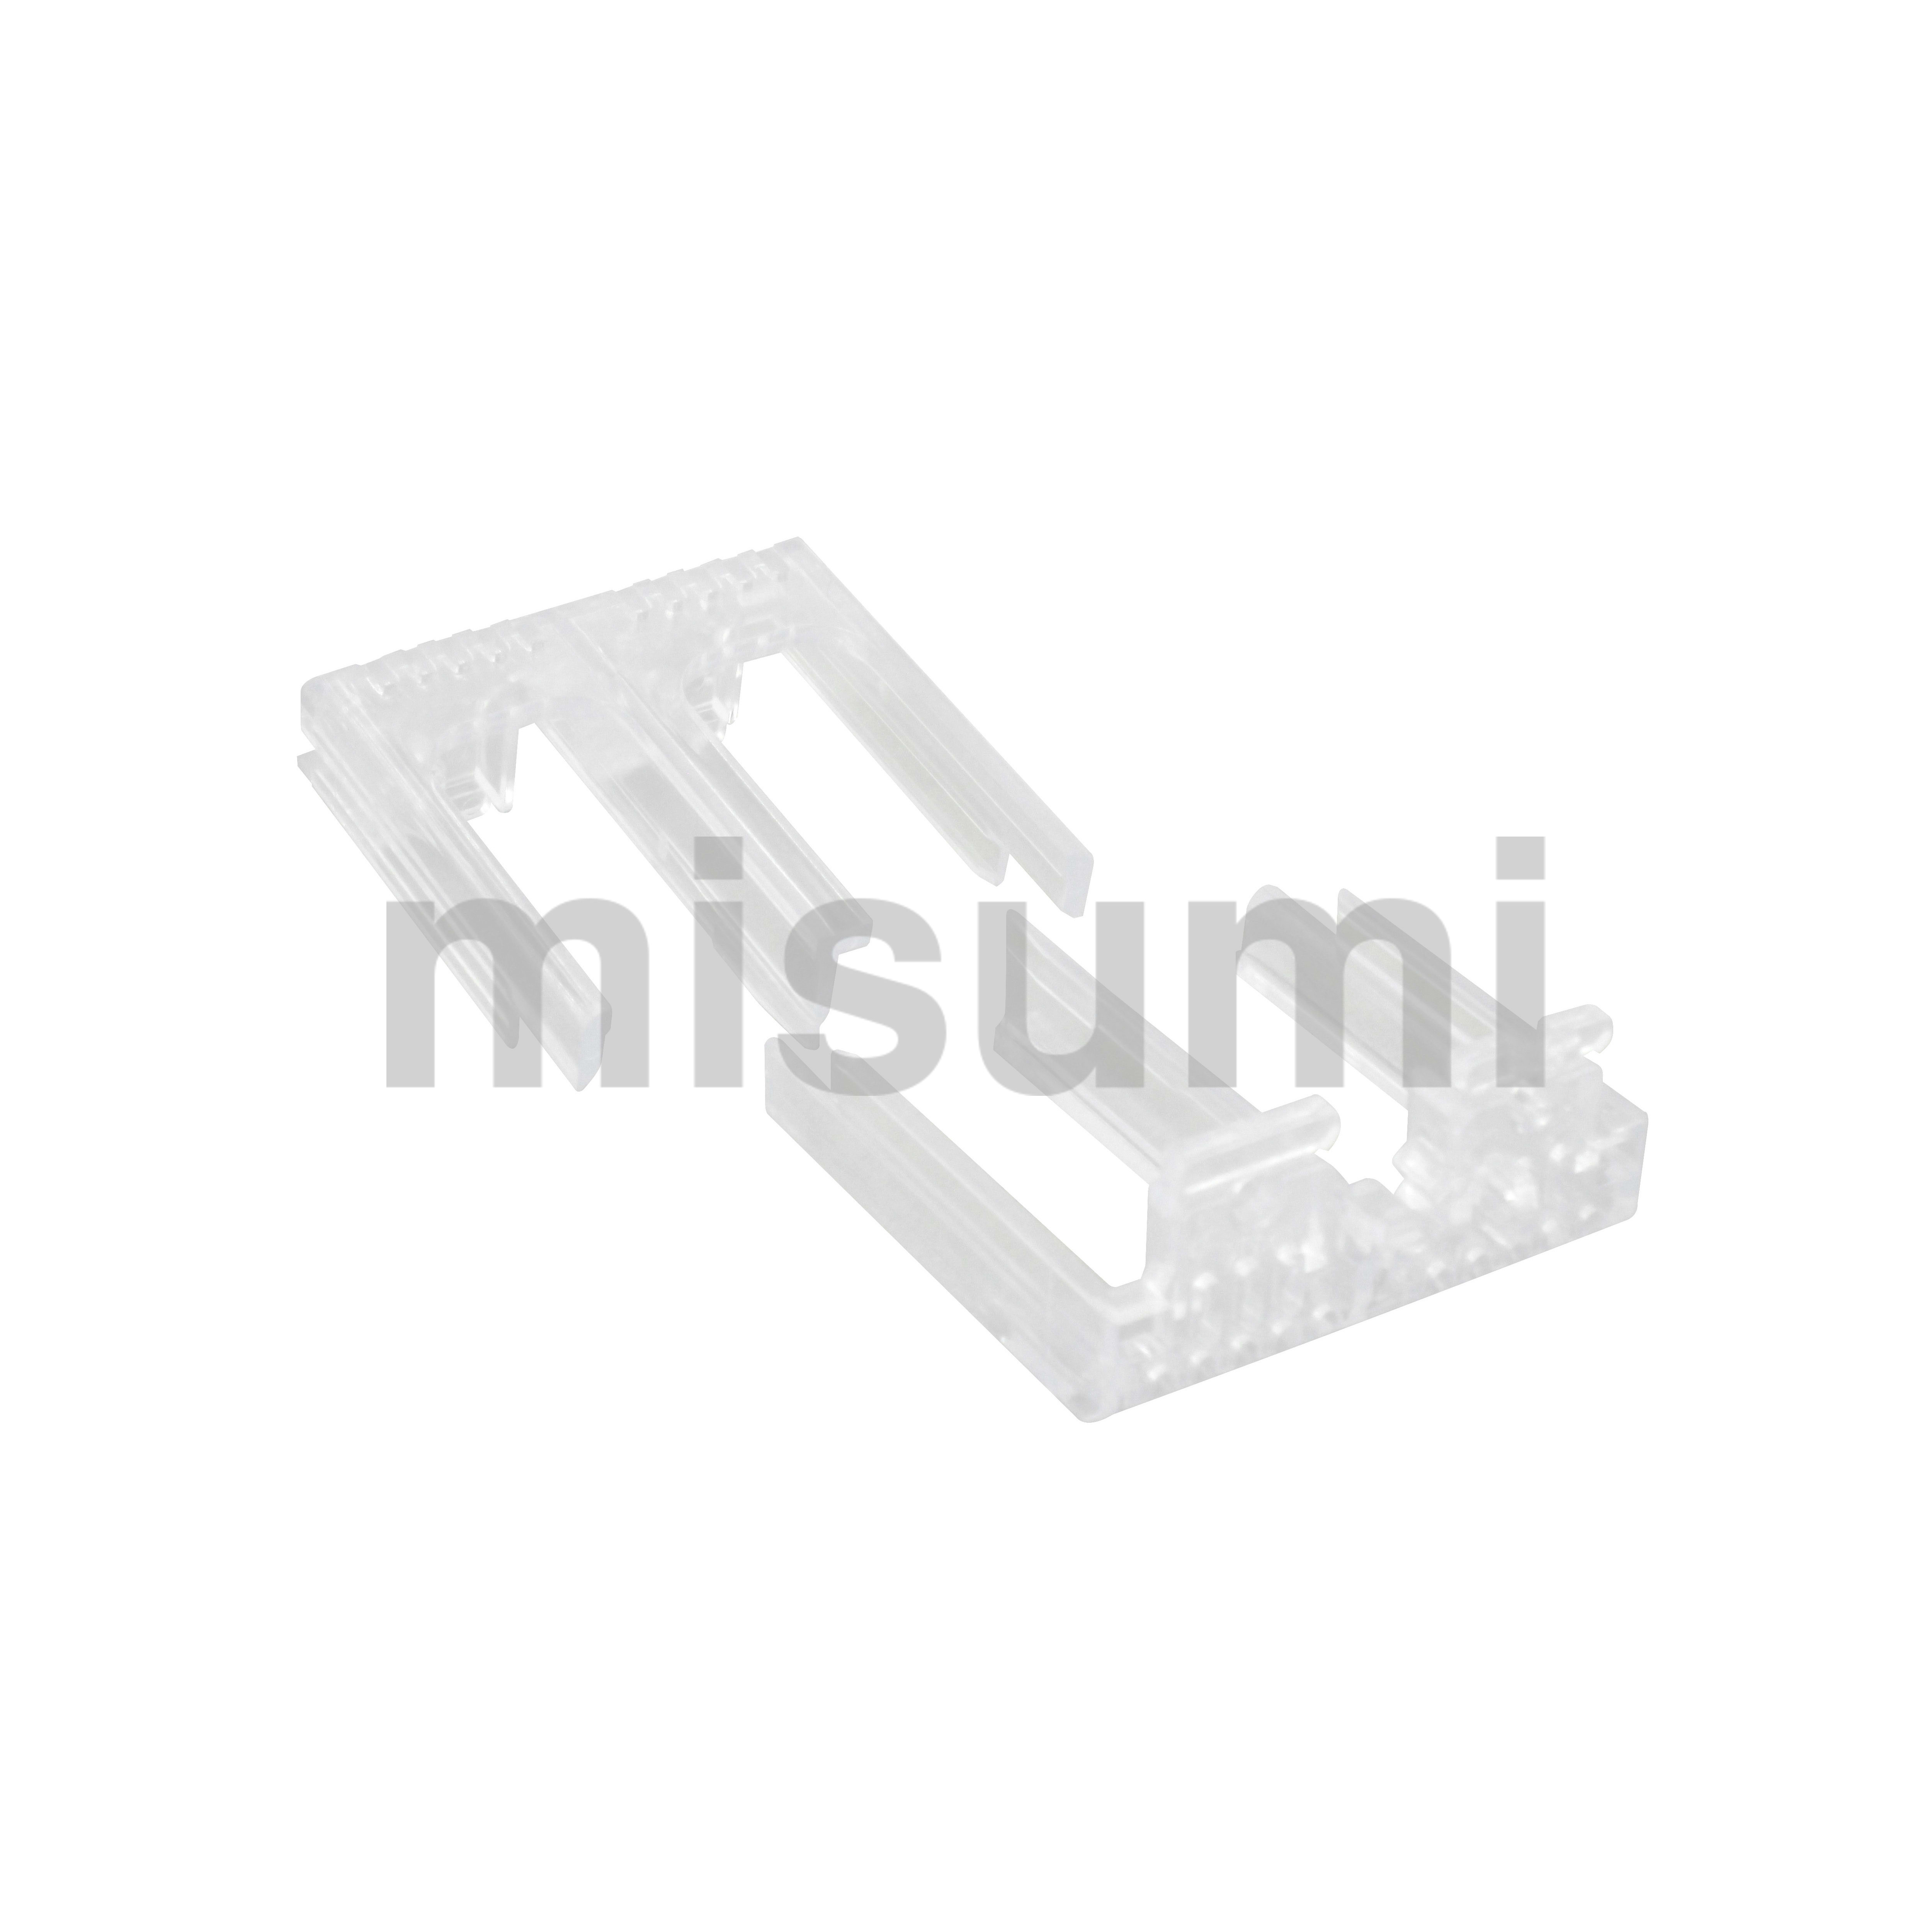 警報・補助スイッチ | 三菱電機 | MISUMI(ミスミ)